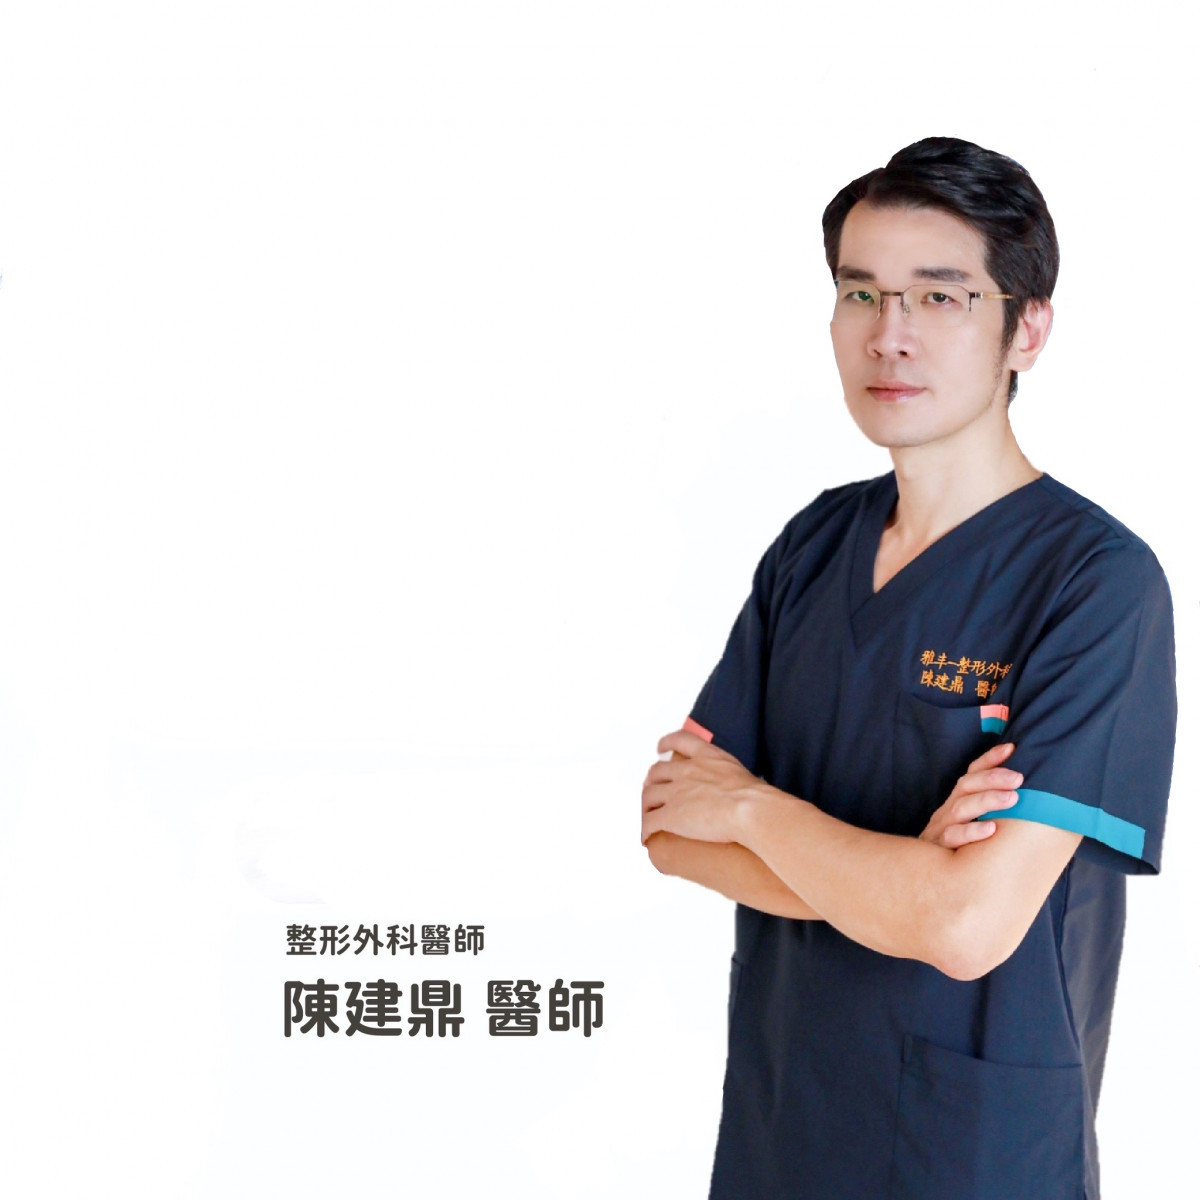 雅丰竹北診所陳建鼎院長表示做醫美療程怕留疤，其實有正確照護不用怕。